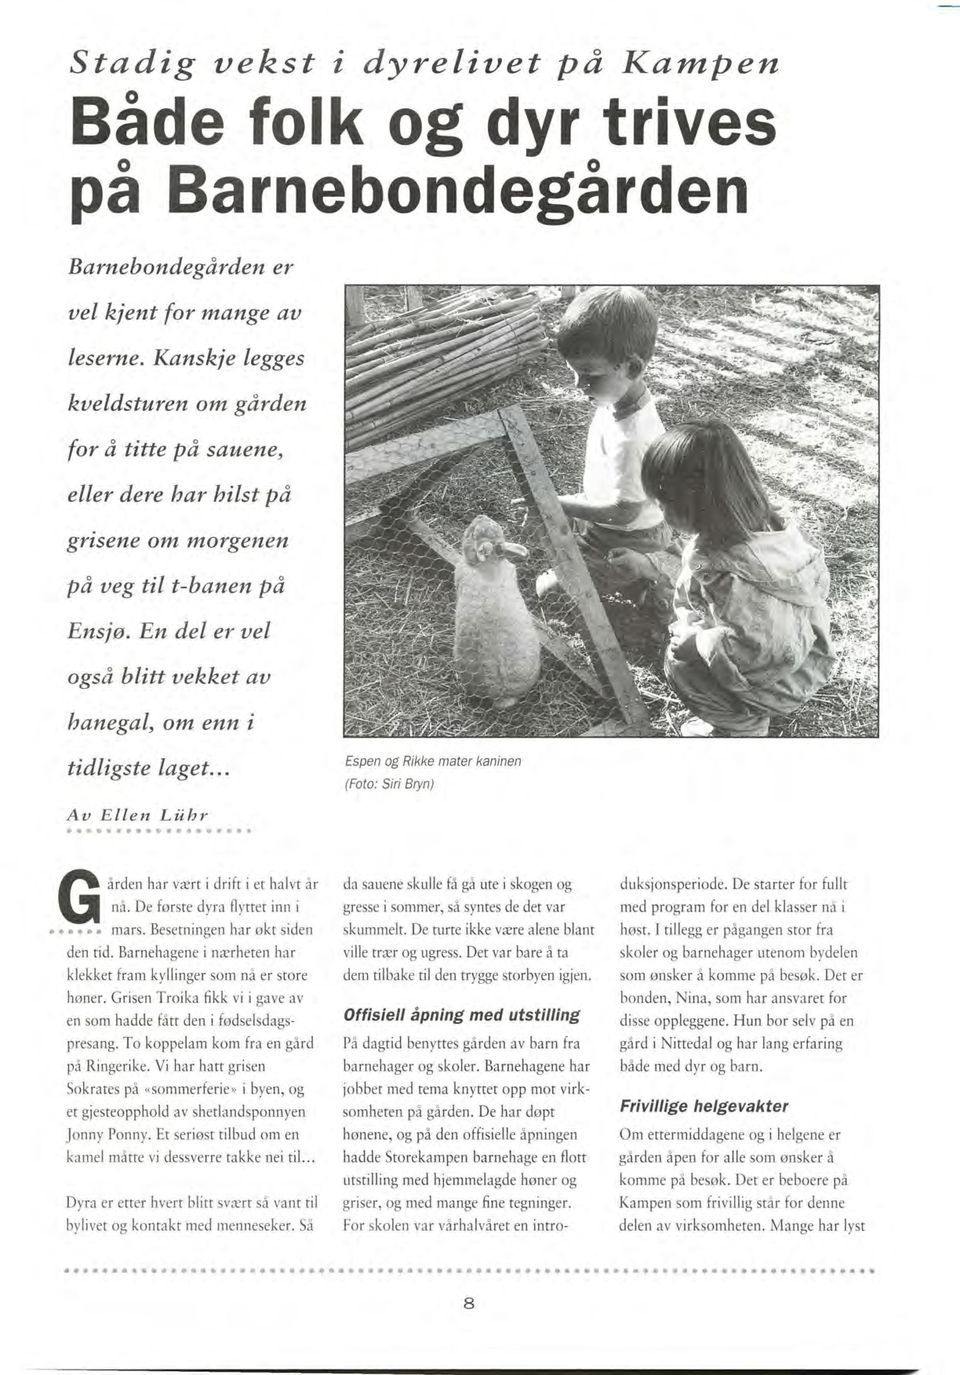 En del er uel også blitt uekket au hanegal, om enn i tidligste laget... Au Ellen Liibr Espen og Rikke mater kaninen (Foto: Siri Bryn) " - ";.; ården har vært i drift i et halvt år nå.